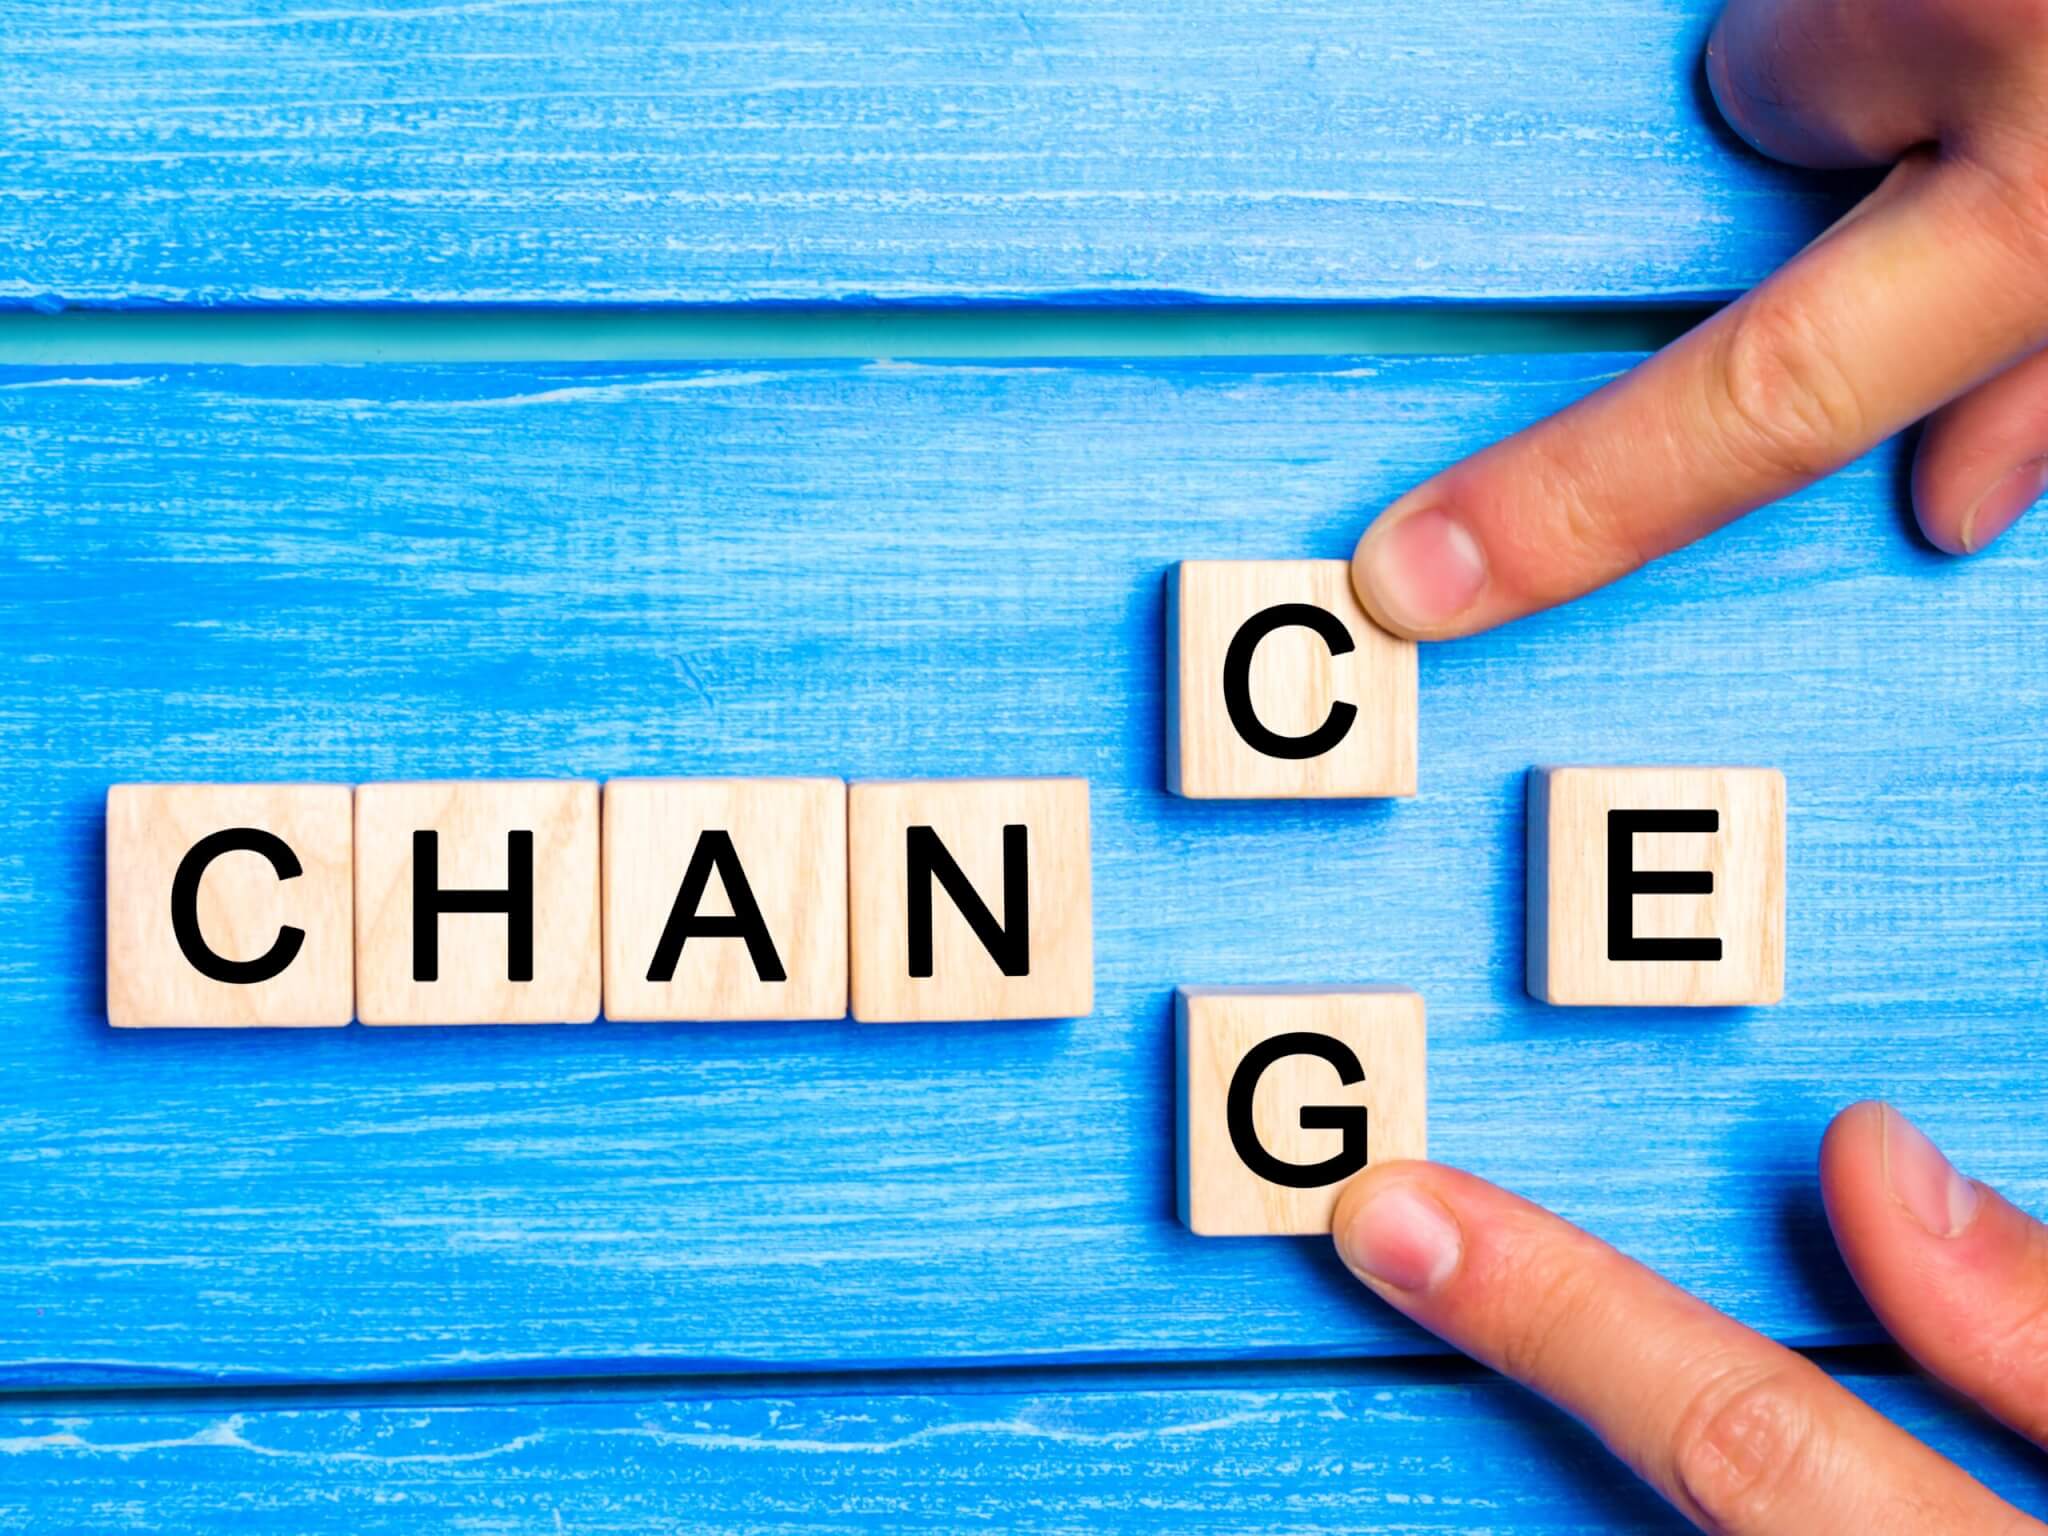 Changemanagement - Potenziale entdecken, Wandel vorantreiben